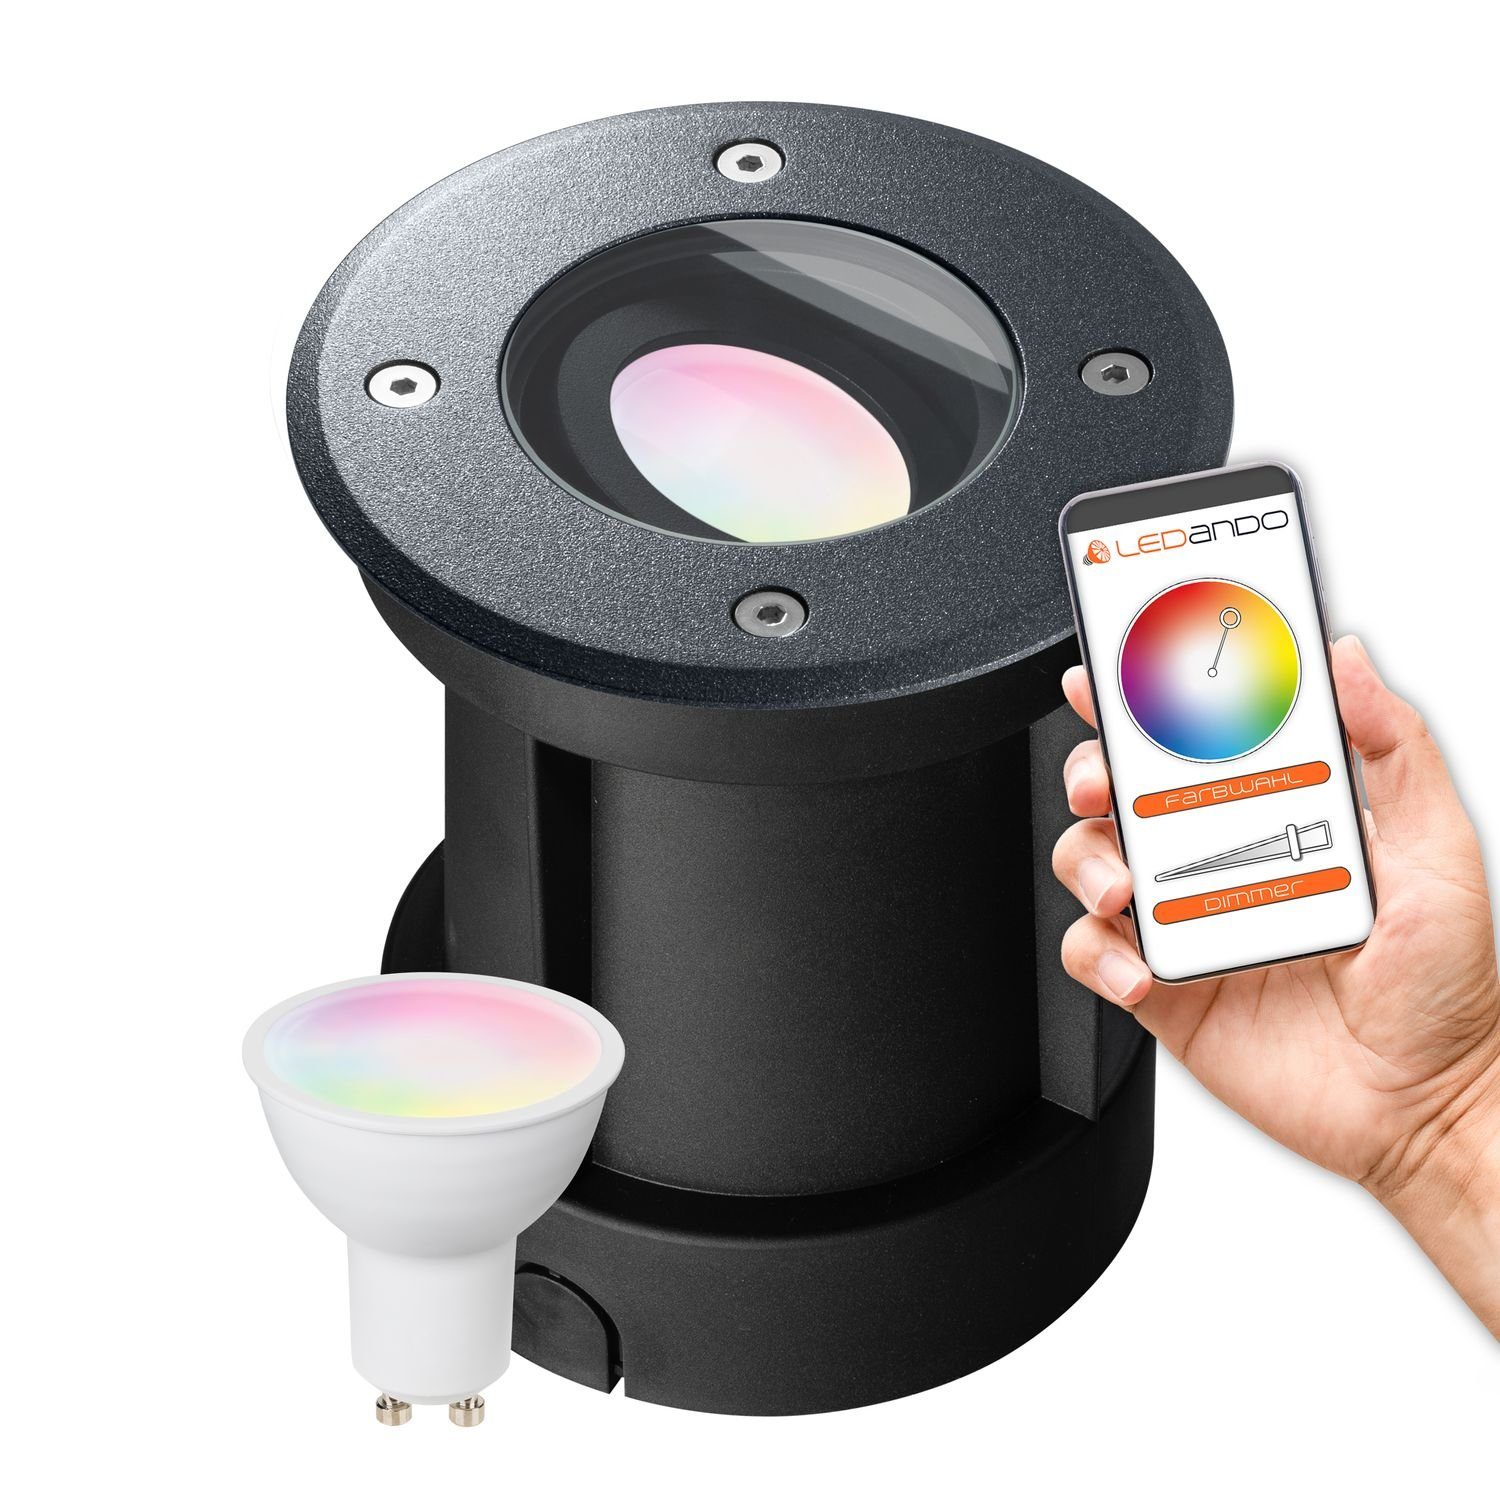 + 5W LEDANDO RGB App Set - per steuerbar LED - Einbaustrahler Smart Bodeneinbaustrahler LED WiFi